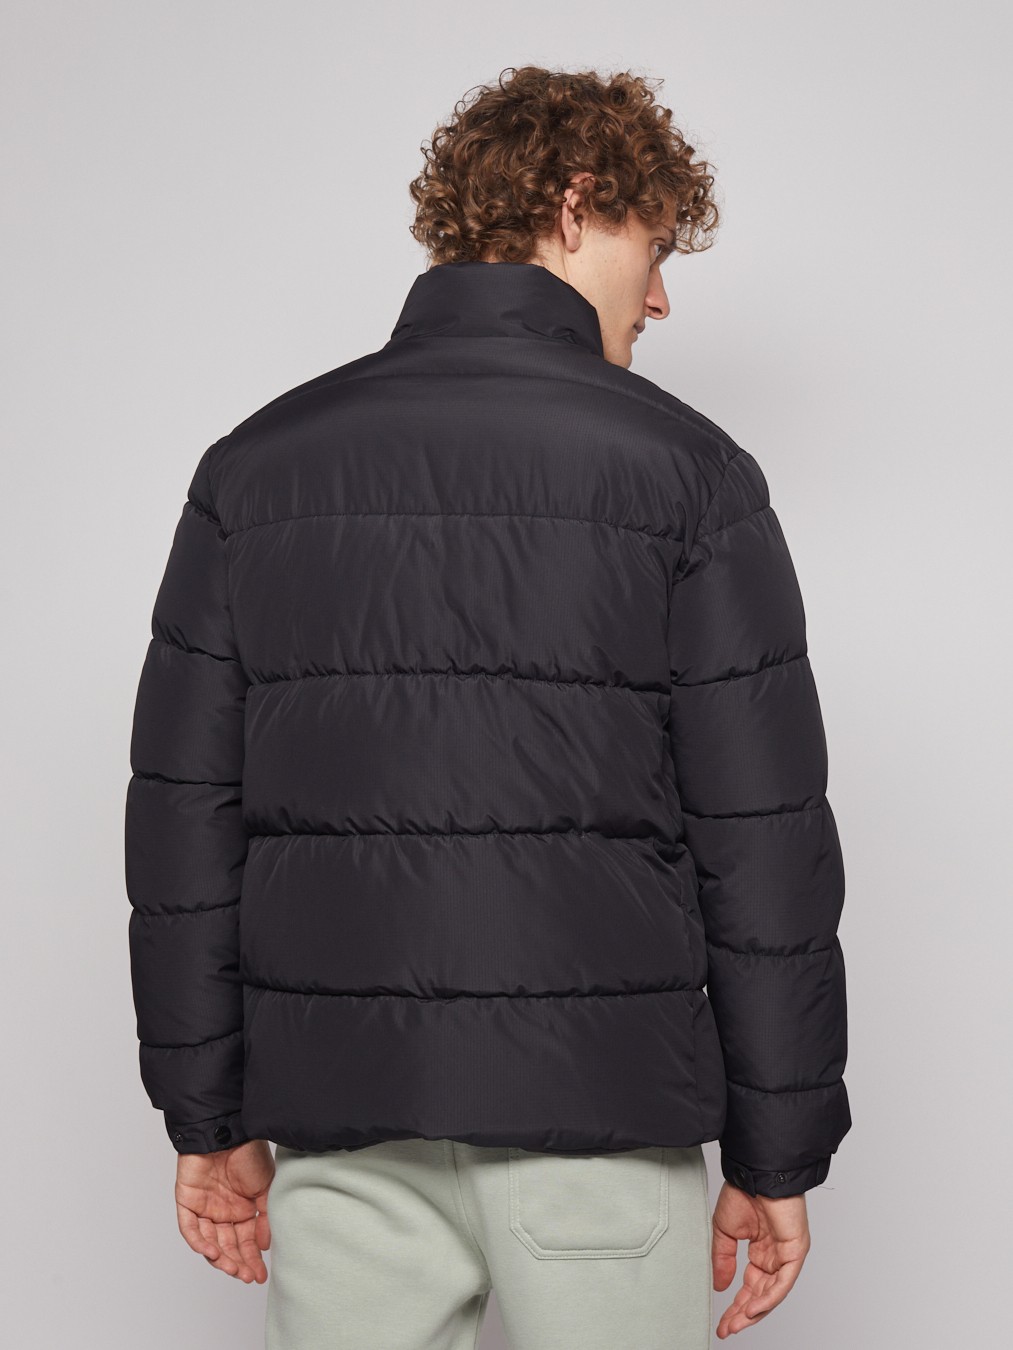 Тёплая куртка с воротником-стойкой zolla 012345102184, цвет черный, размер S - фото 6